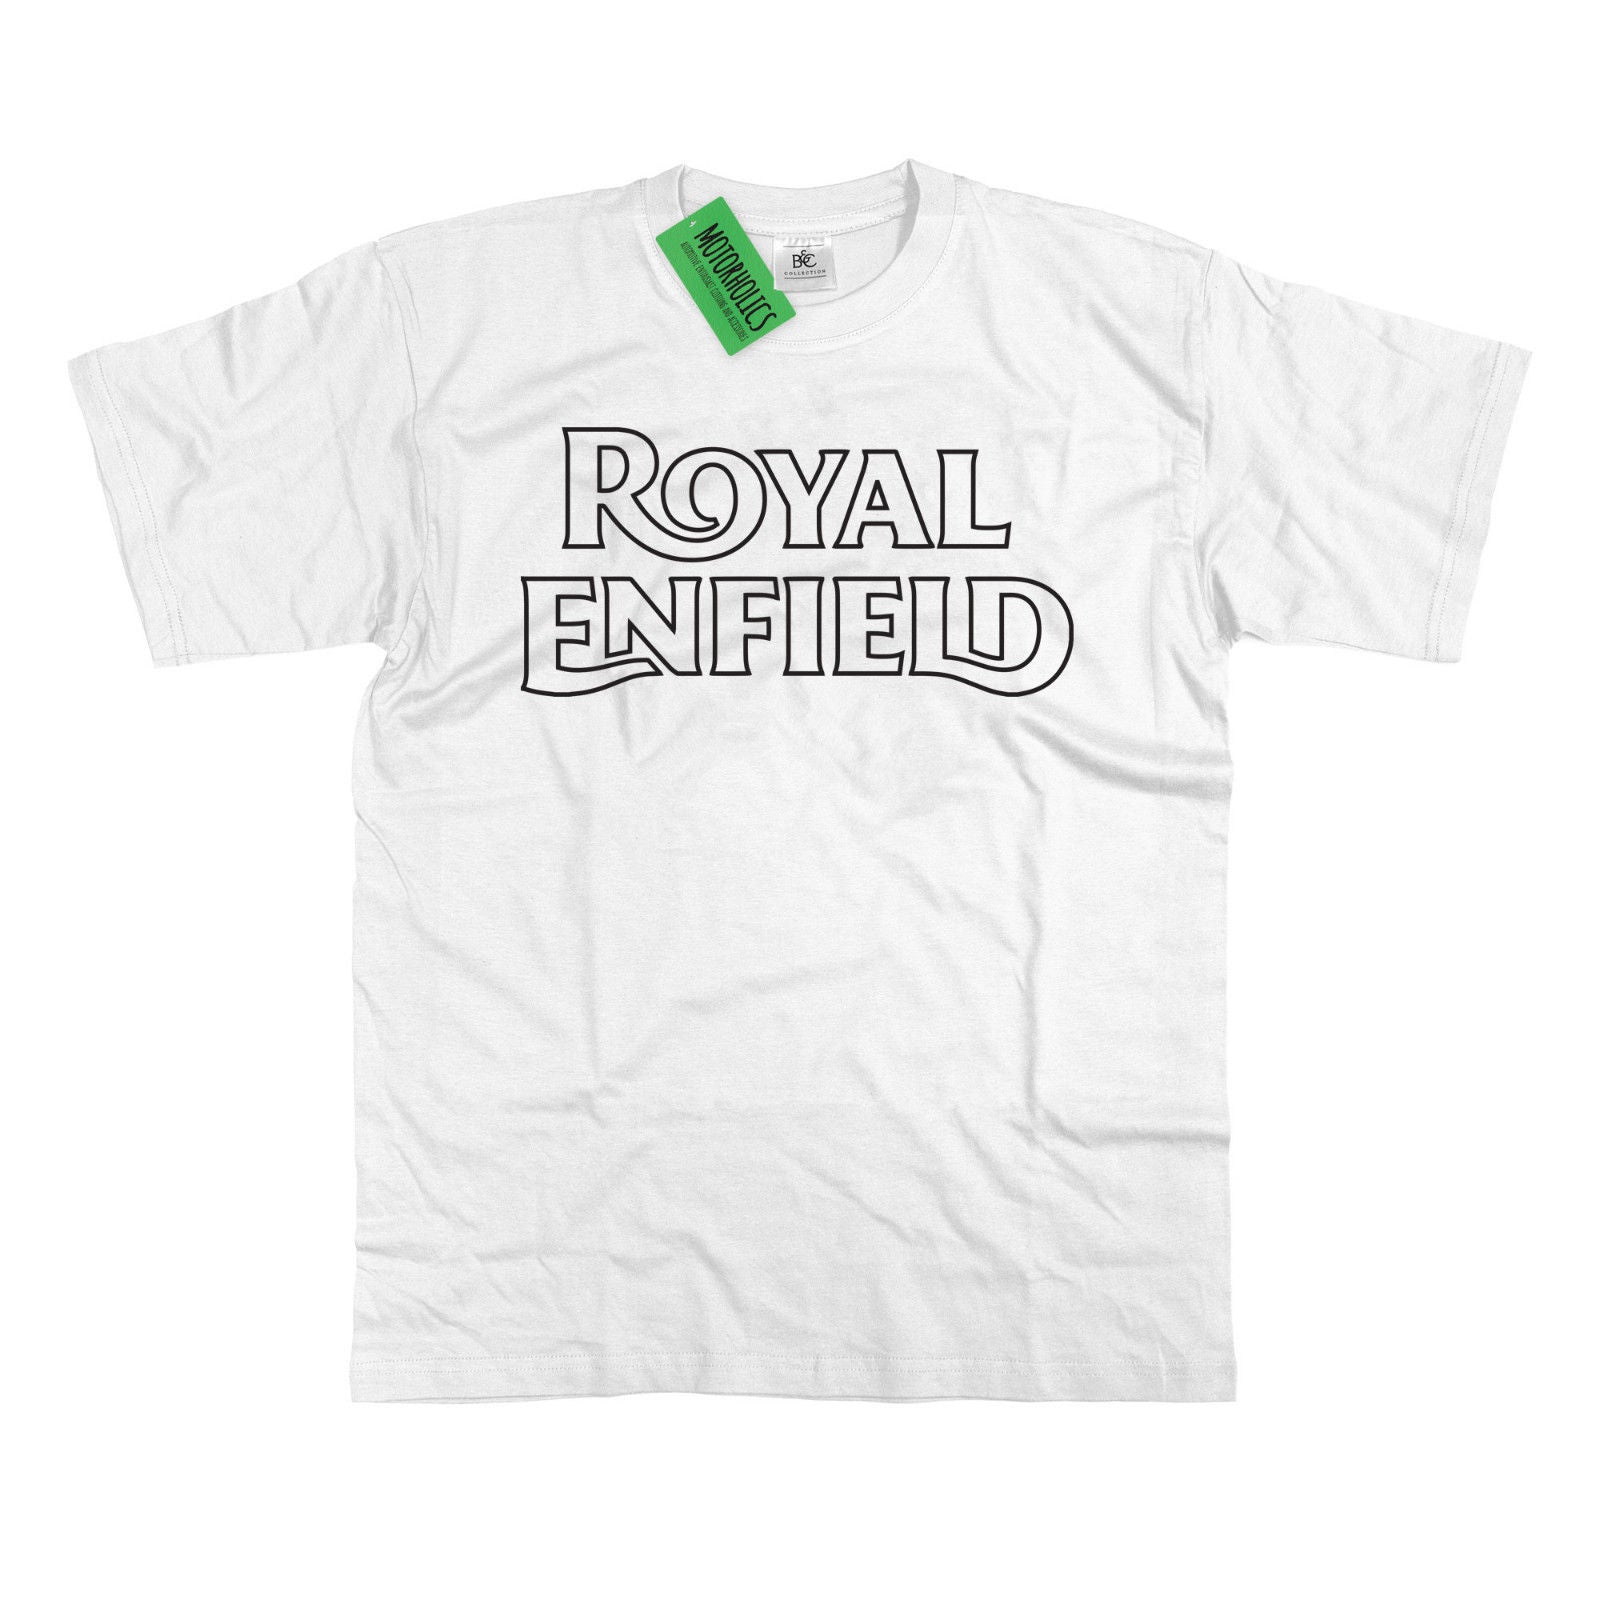 royal enfield t shirts uk